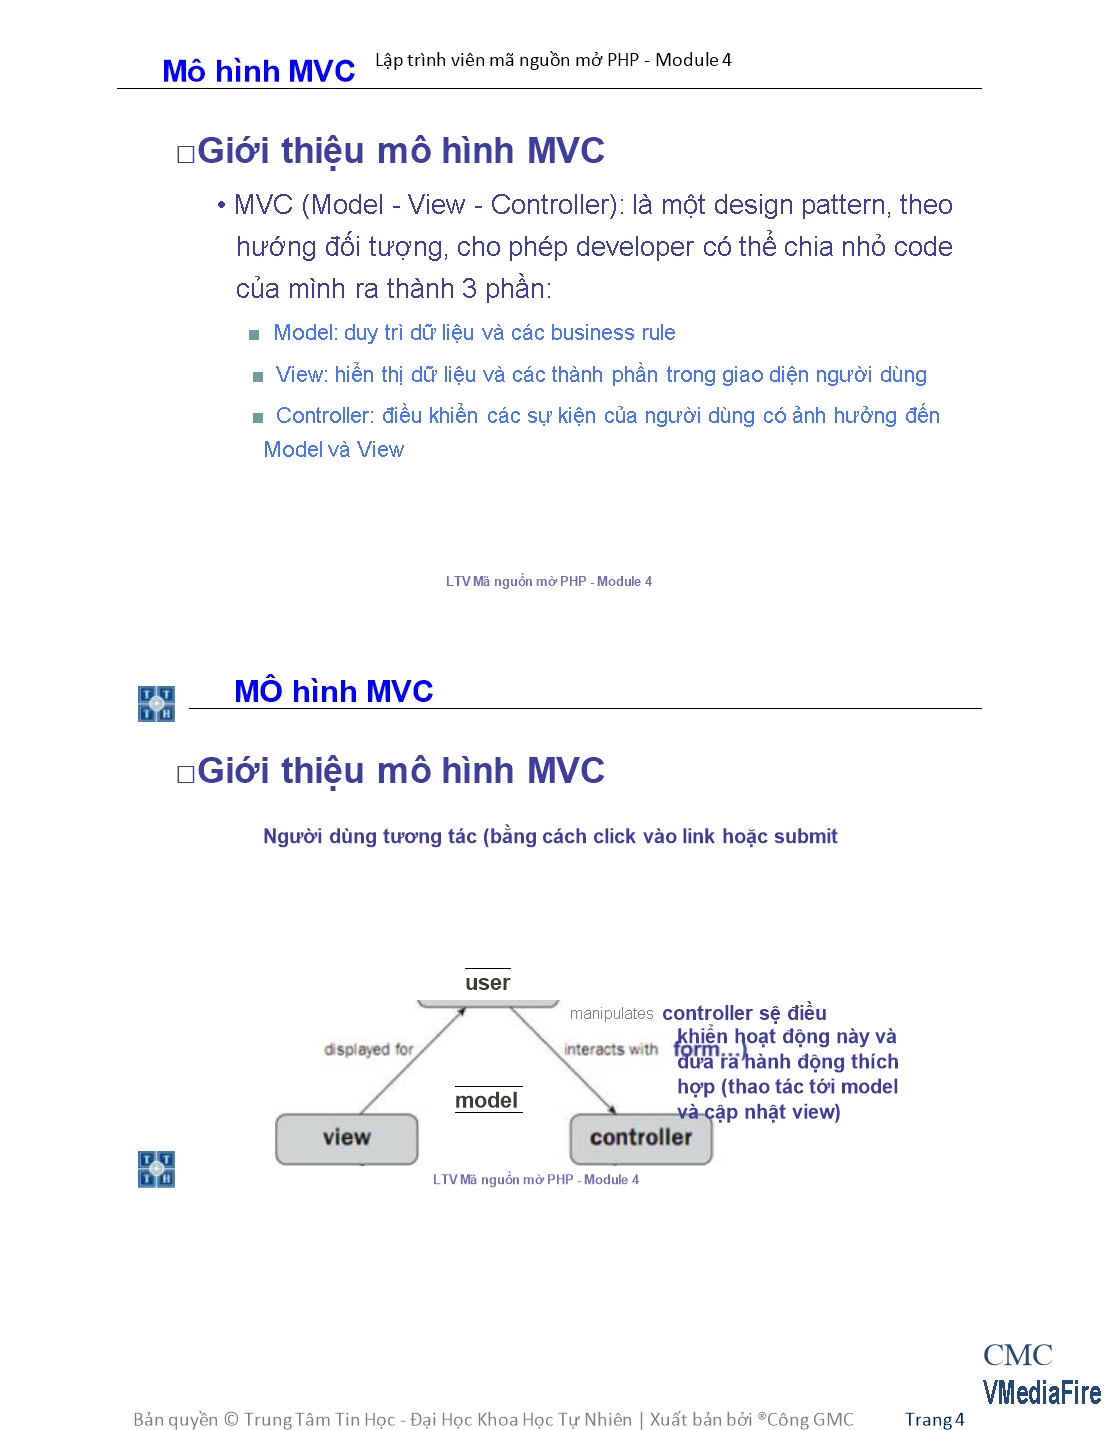 Giáo trình Module 4: Lập trình viên mã nguồn mở PHP - Bài 1: Mô hình MVC trang 4